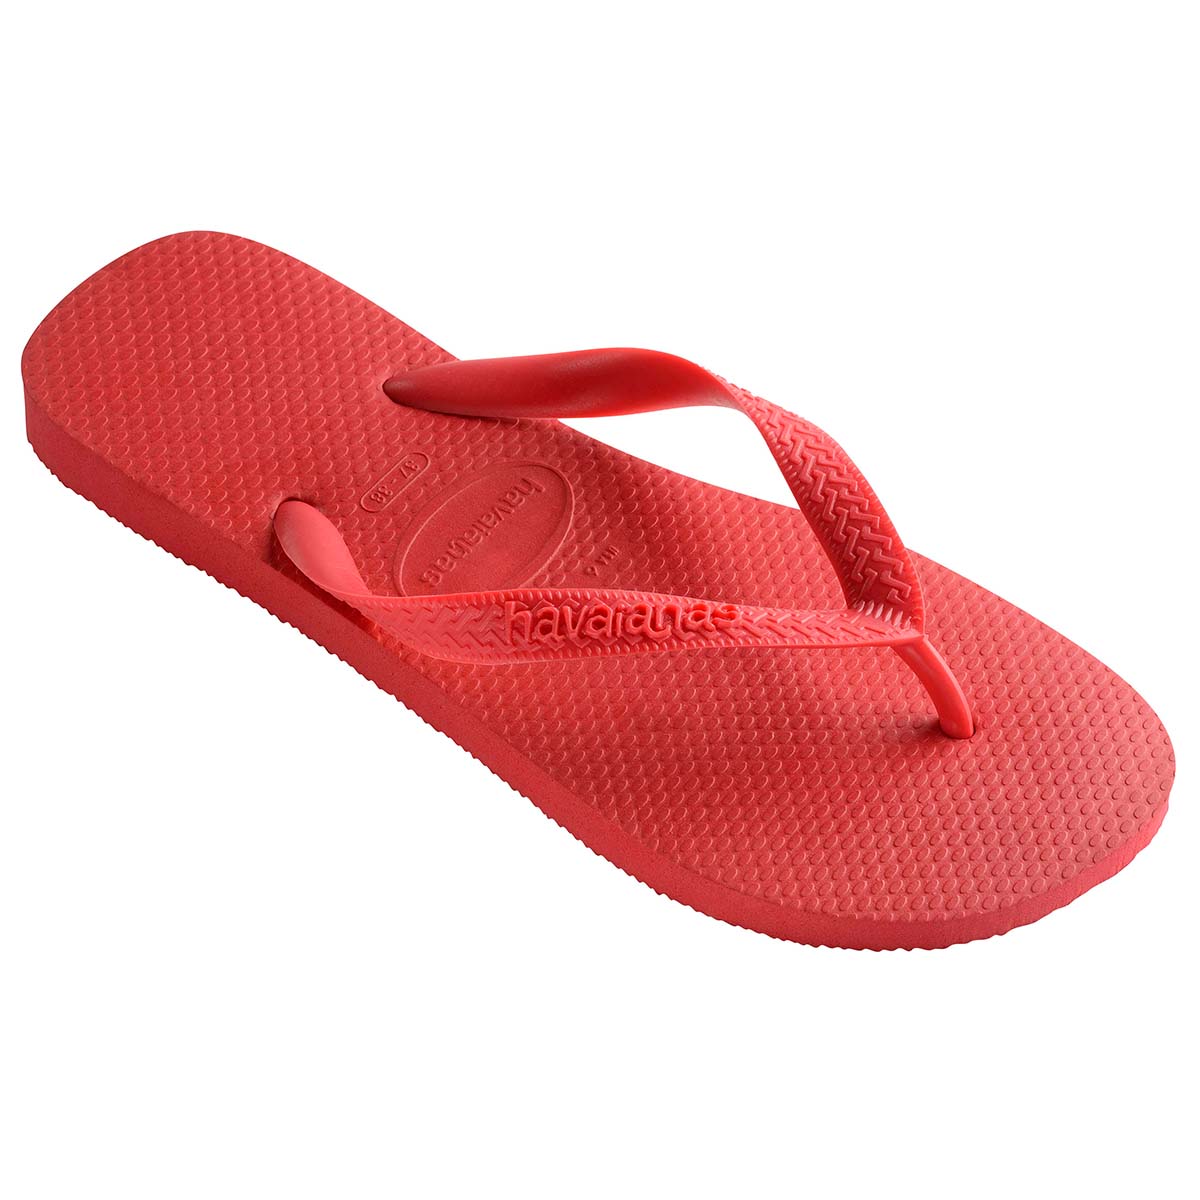 Havaianas Top Unisex Erwachsene Sandalen Zehentrenner Badelatschen 4000029 Rot